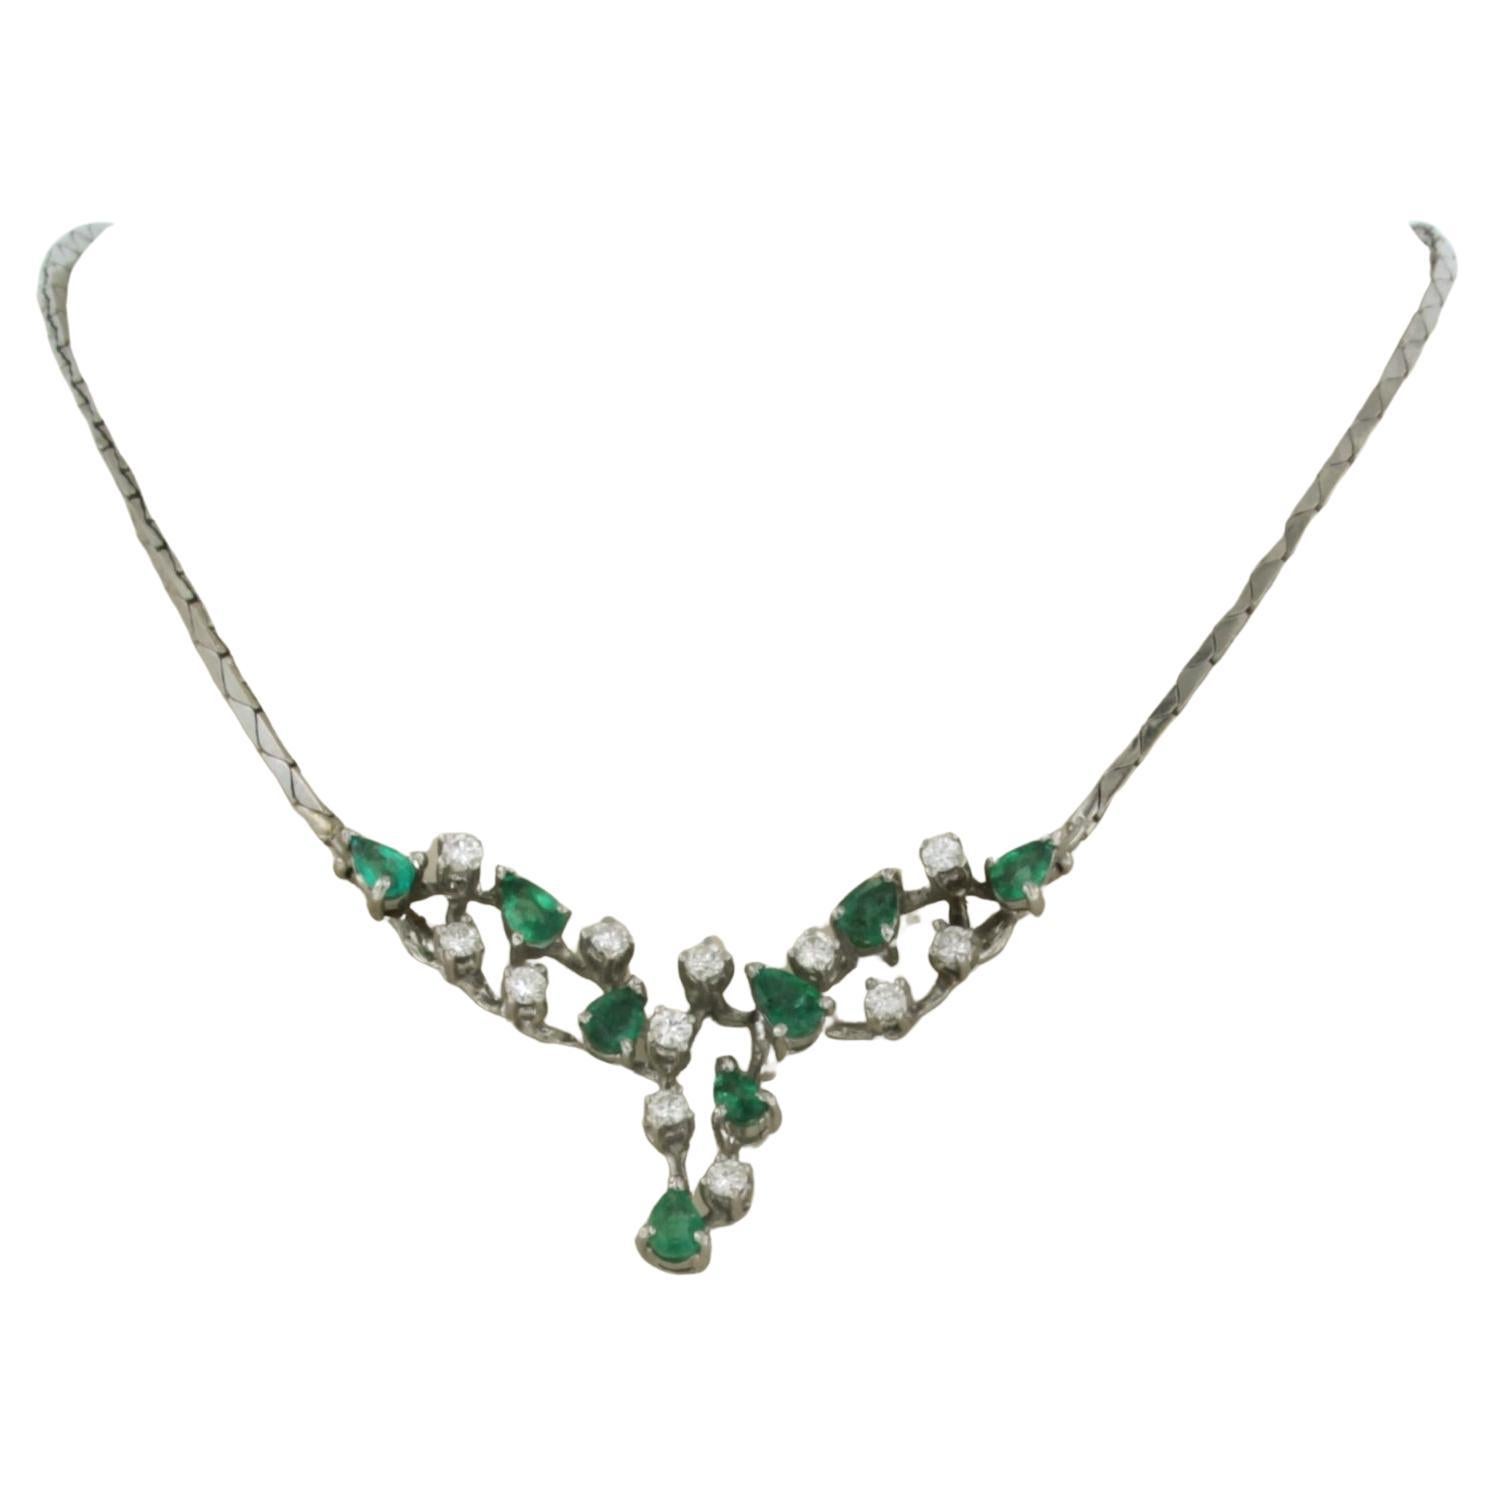 Halskette aus 18 Karat Weißgold mit Smaragd und Diamanten besetzt